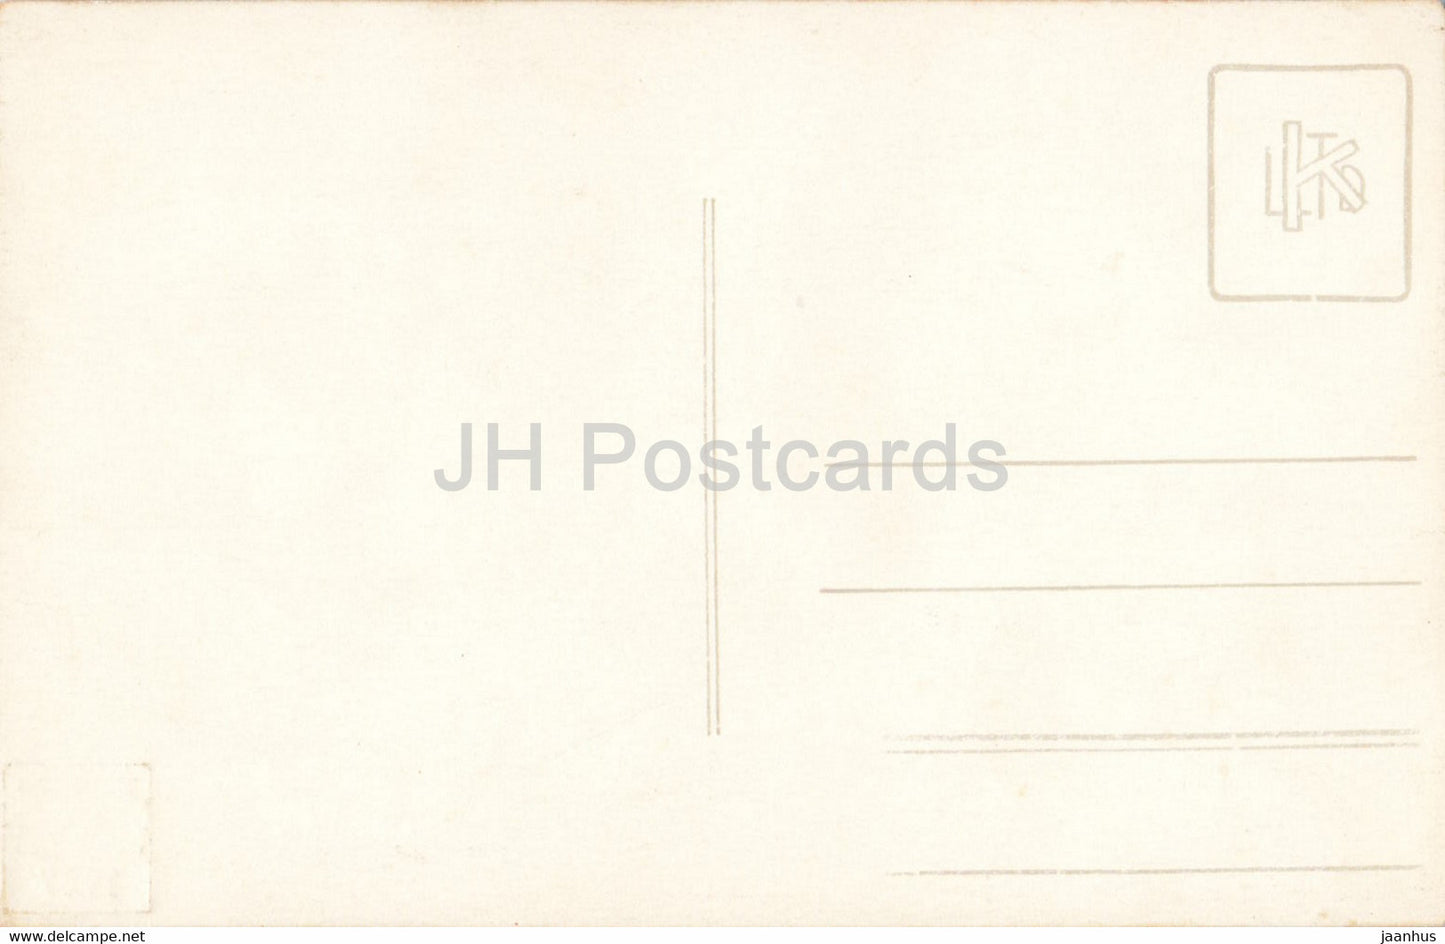 Männer – Julietta Bukarest – 1927 – alte Postkarte – Rumänien – unbenutzt